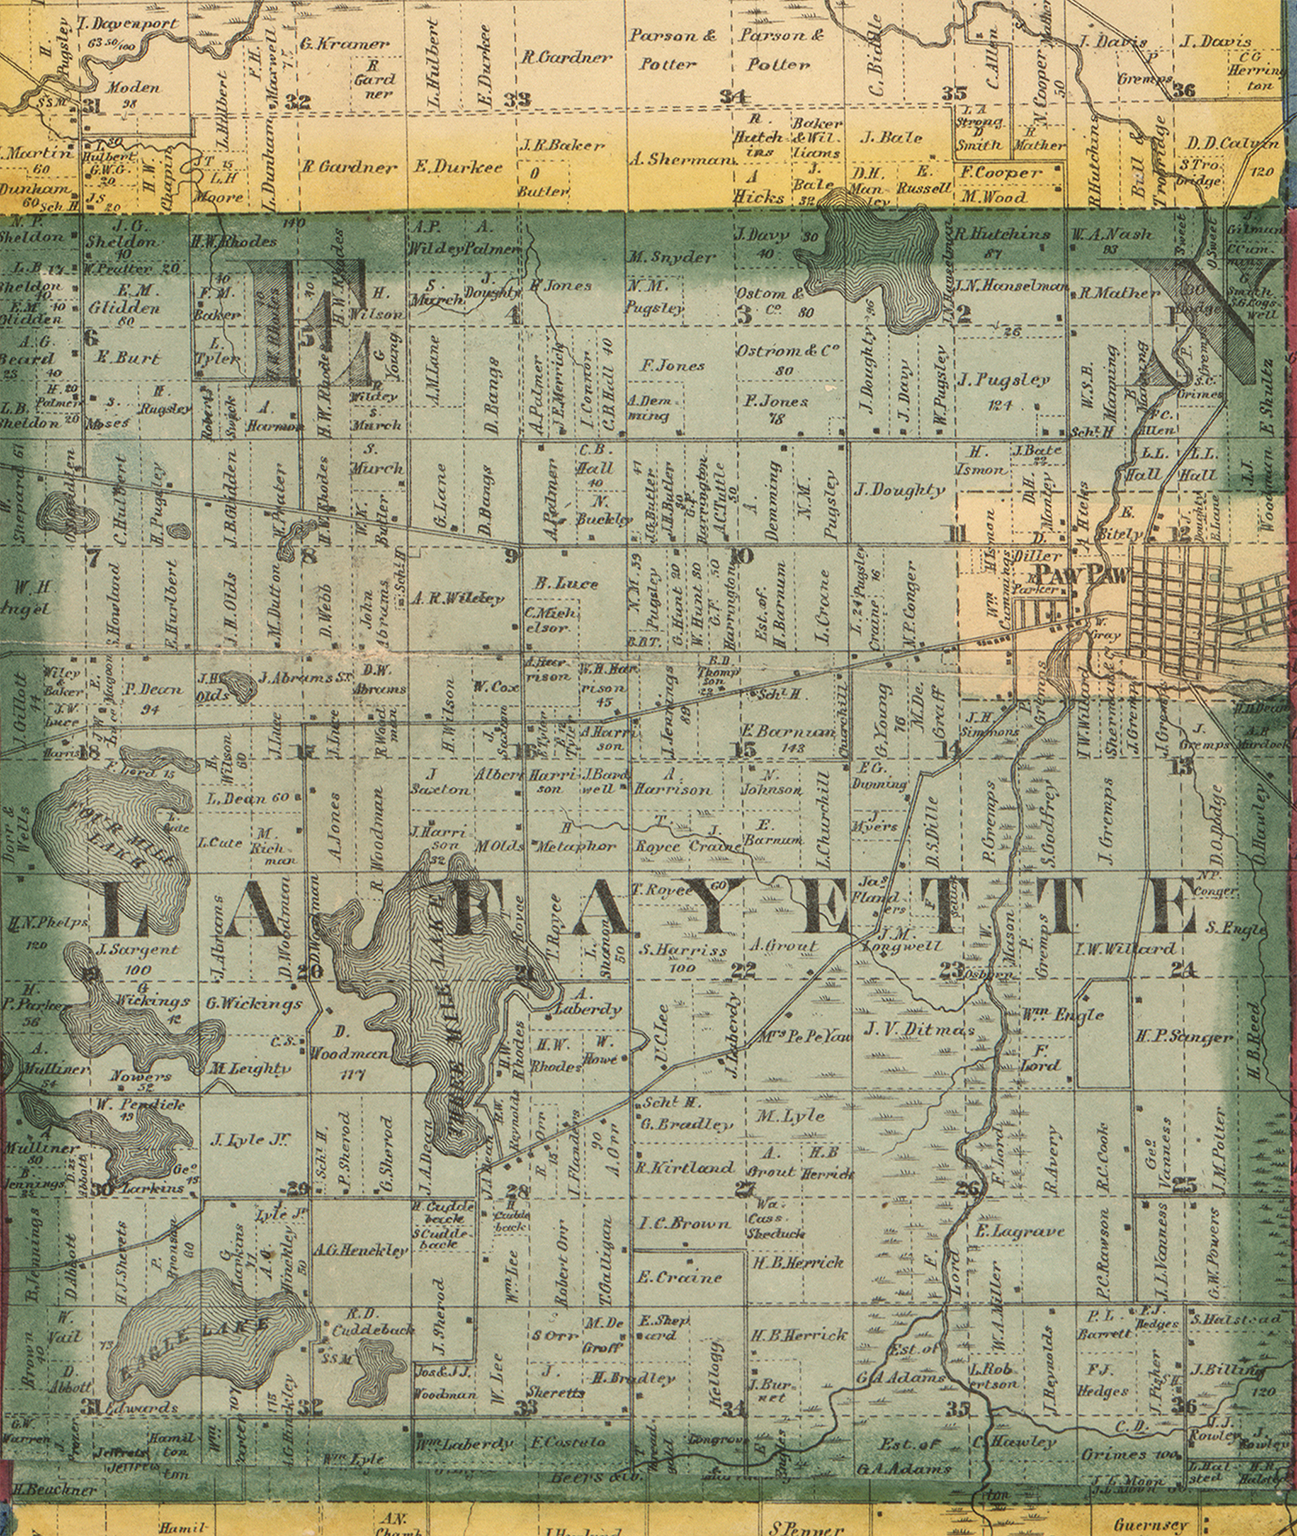 1860 Paw Paw Township, Michigan landownership map